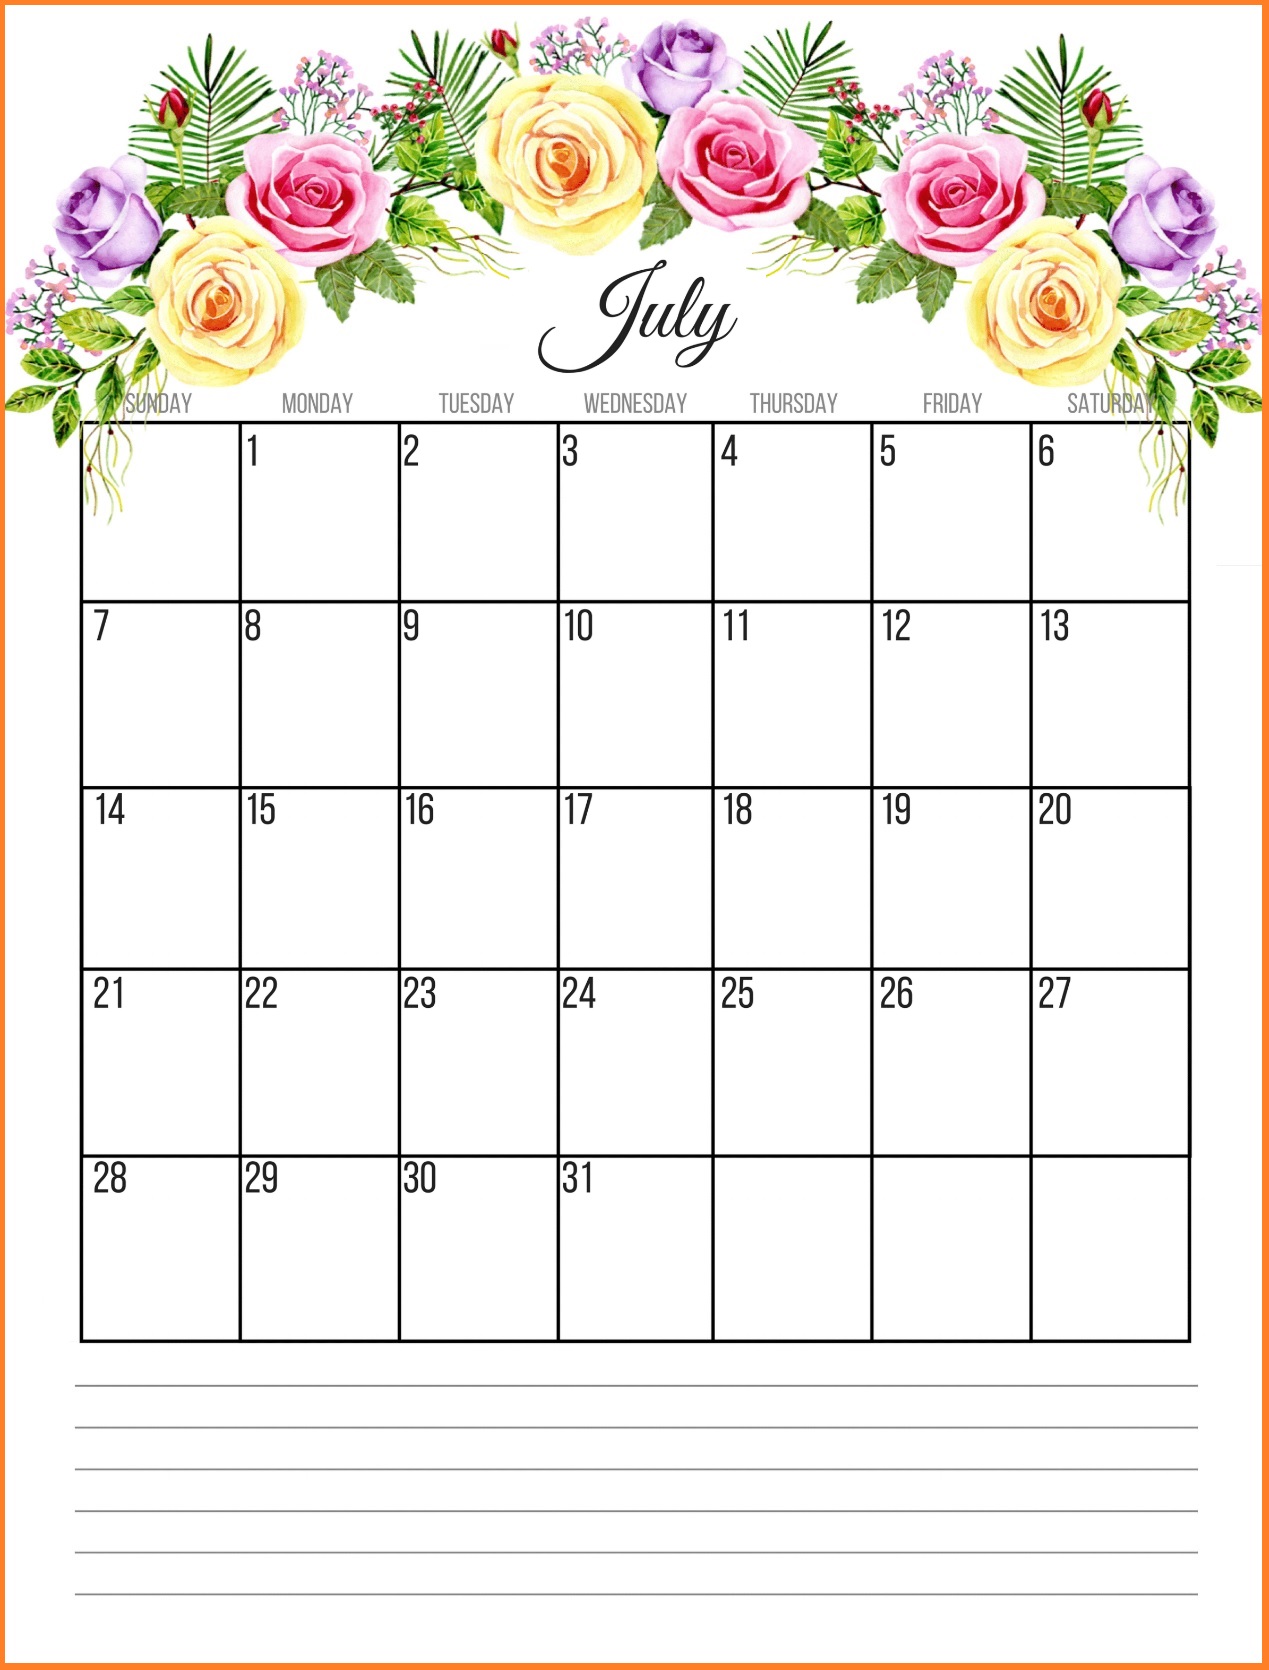 July 2019 HD Calendar